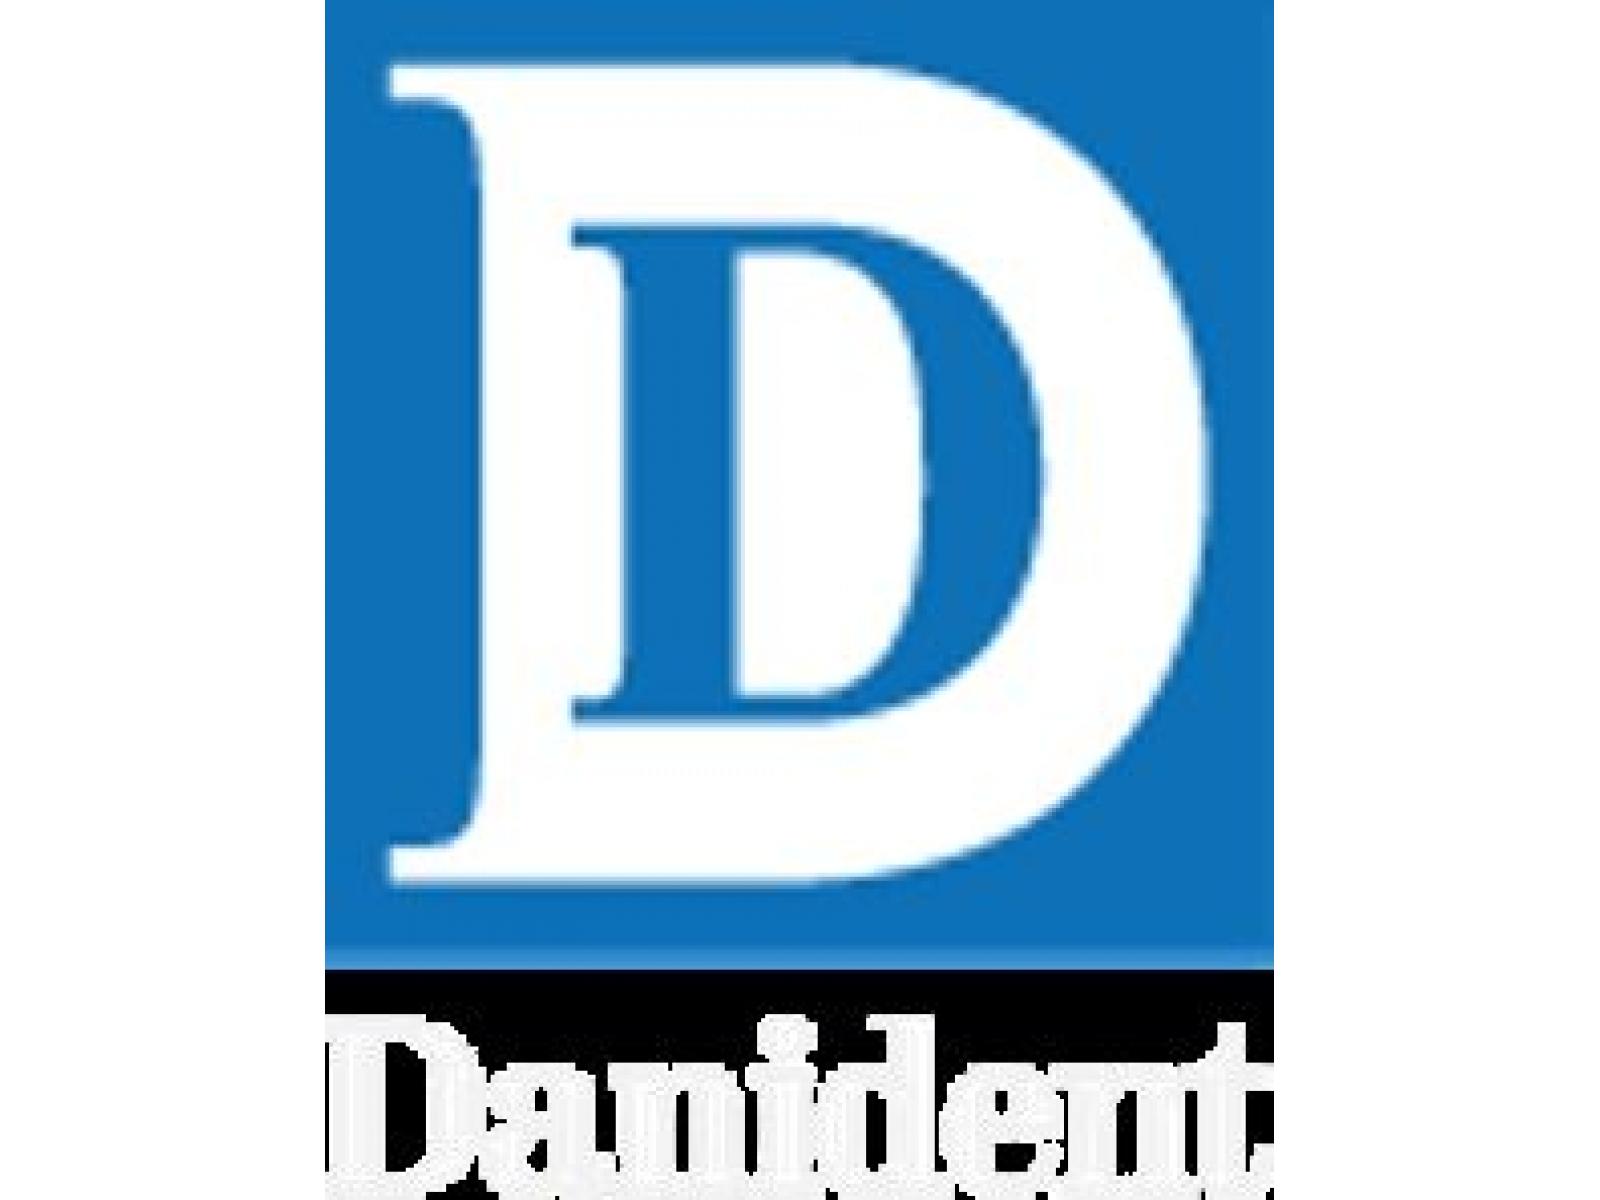 Danident - logo.JPG